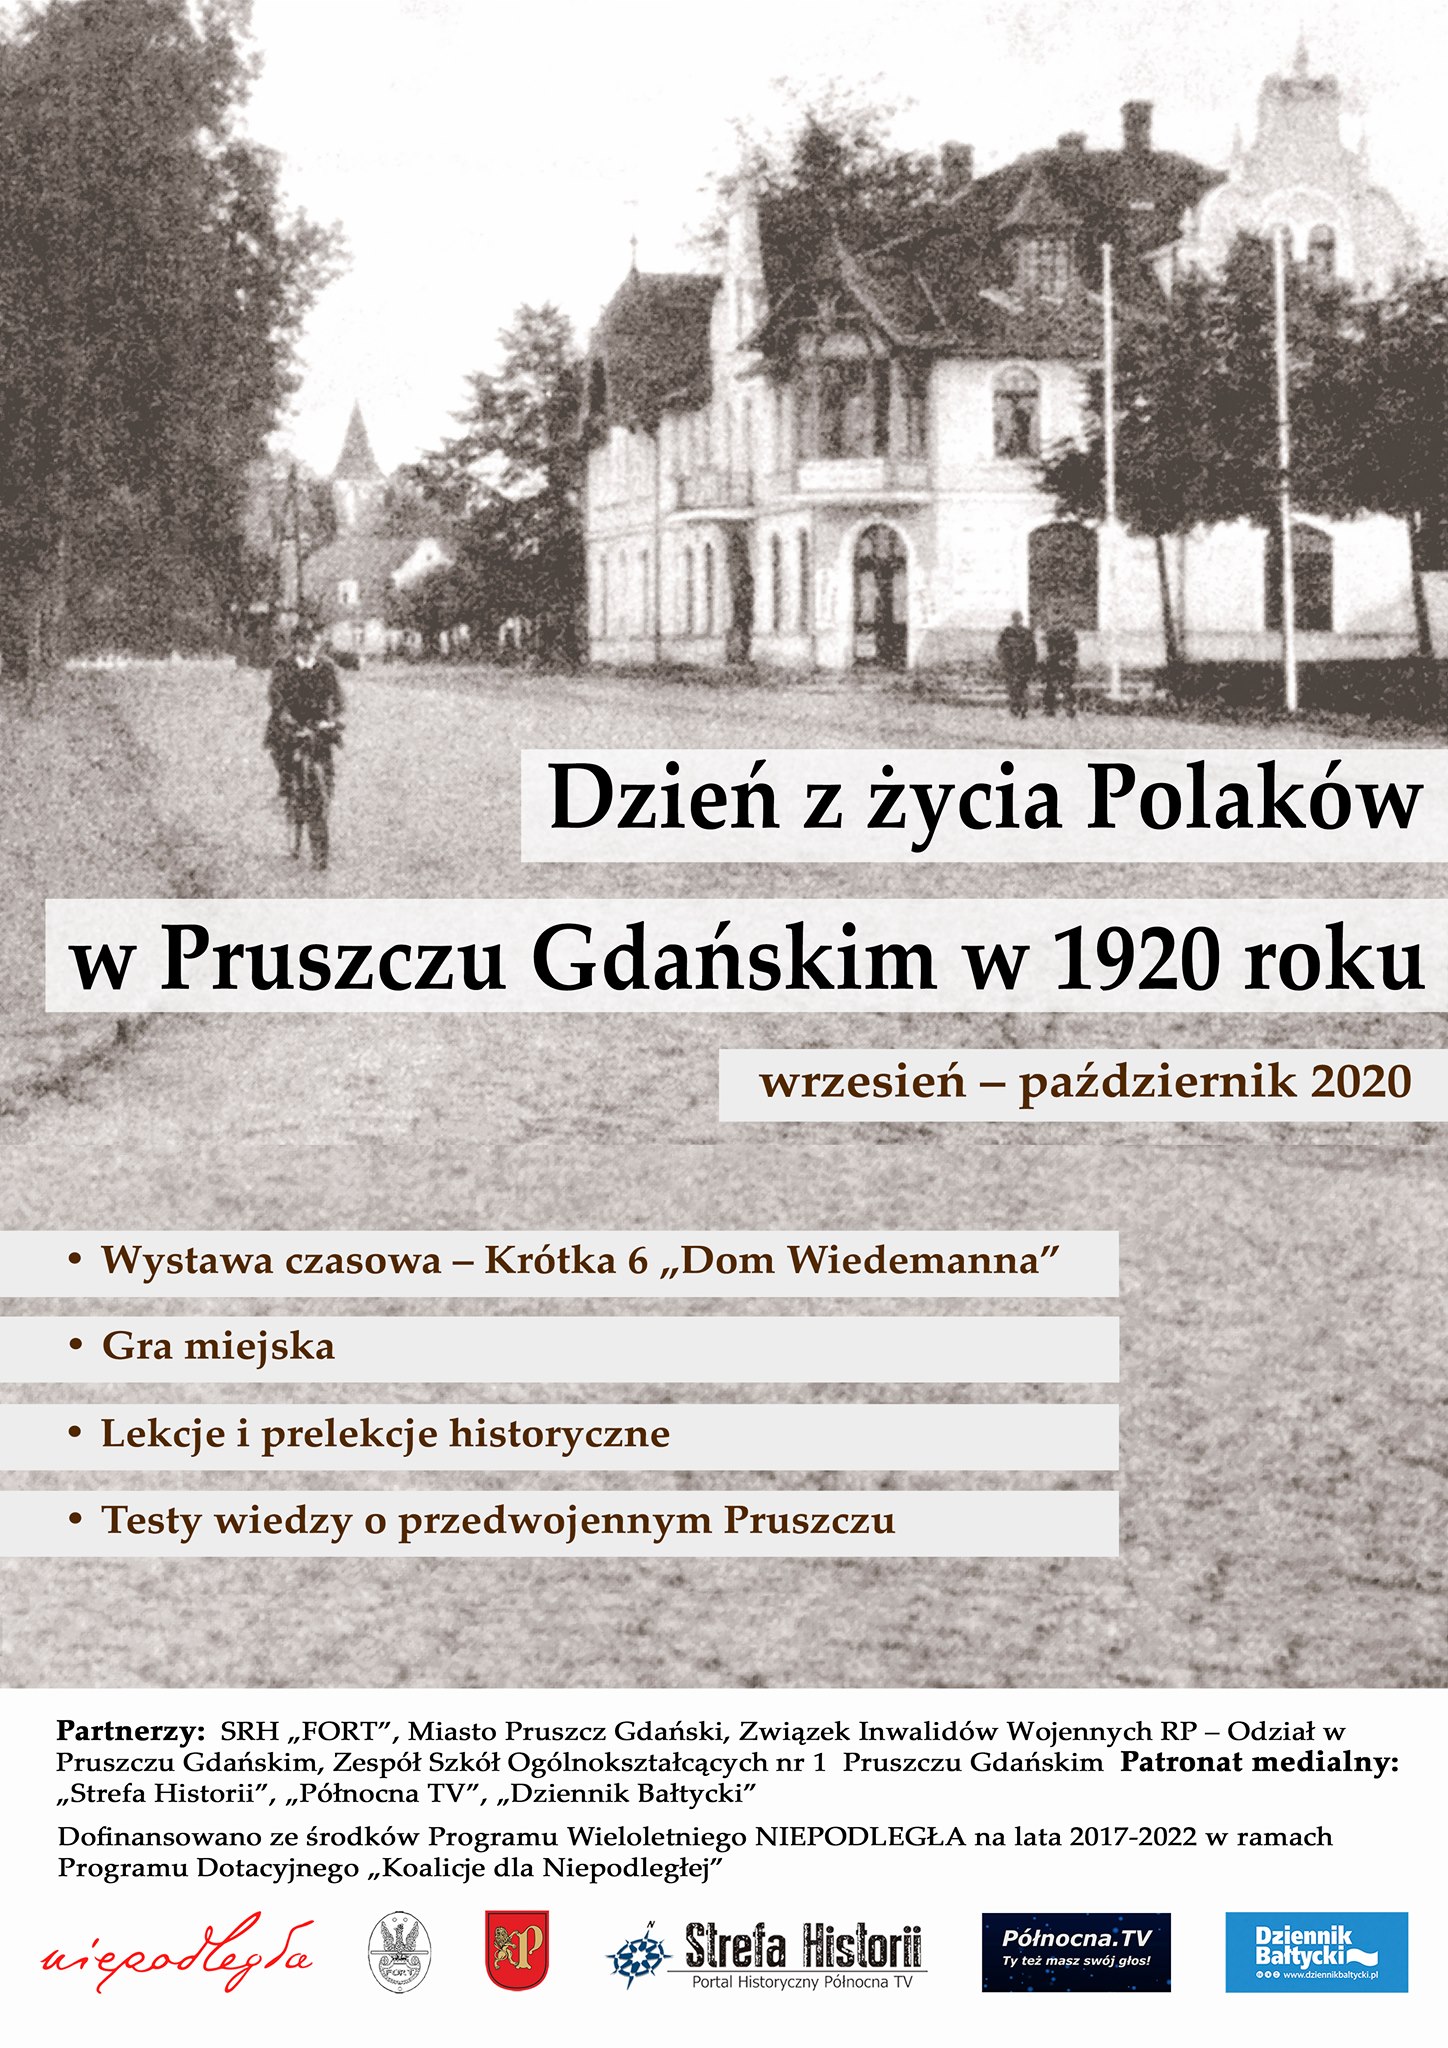 Dzień z życia Polaków w Pruszczu Gdańskim w 1920 roku